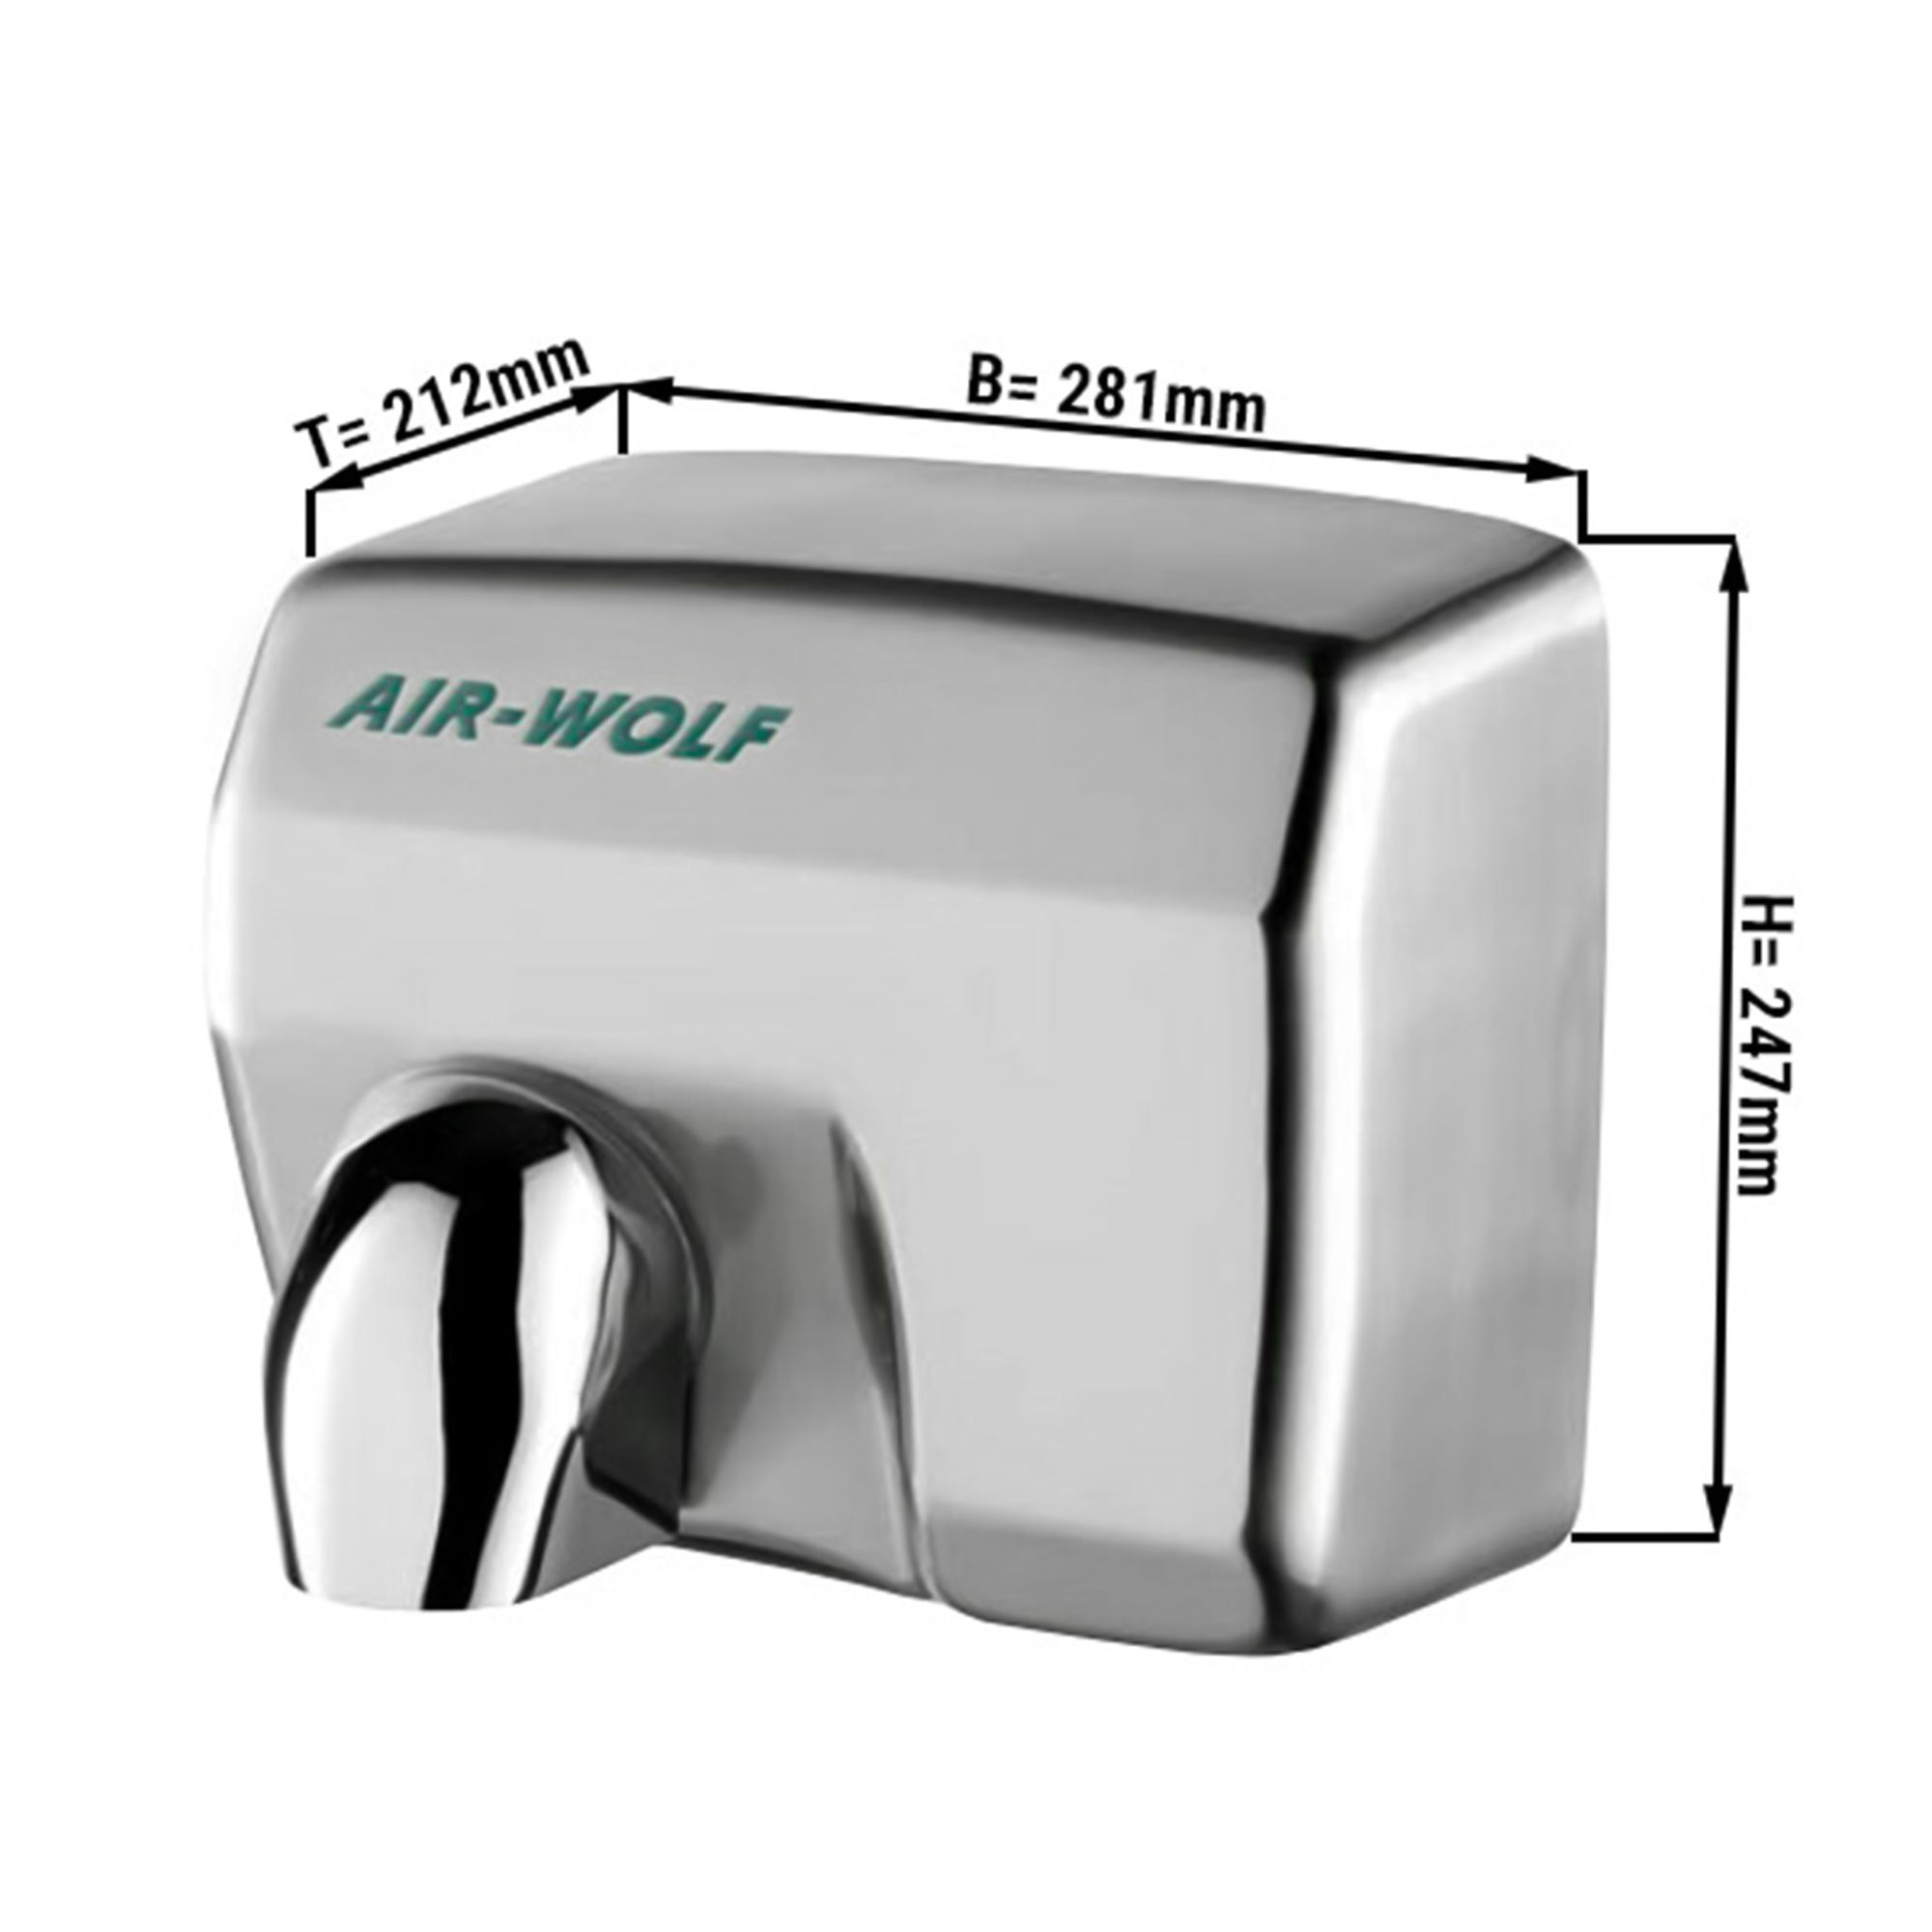 AIR-WOLF, Händetrockner mit Infrarot-Sensor - Edelstahl